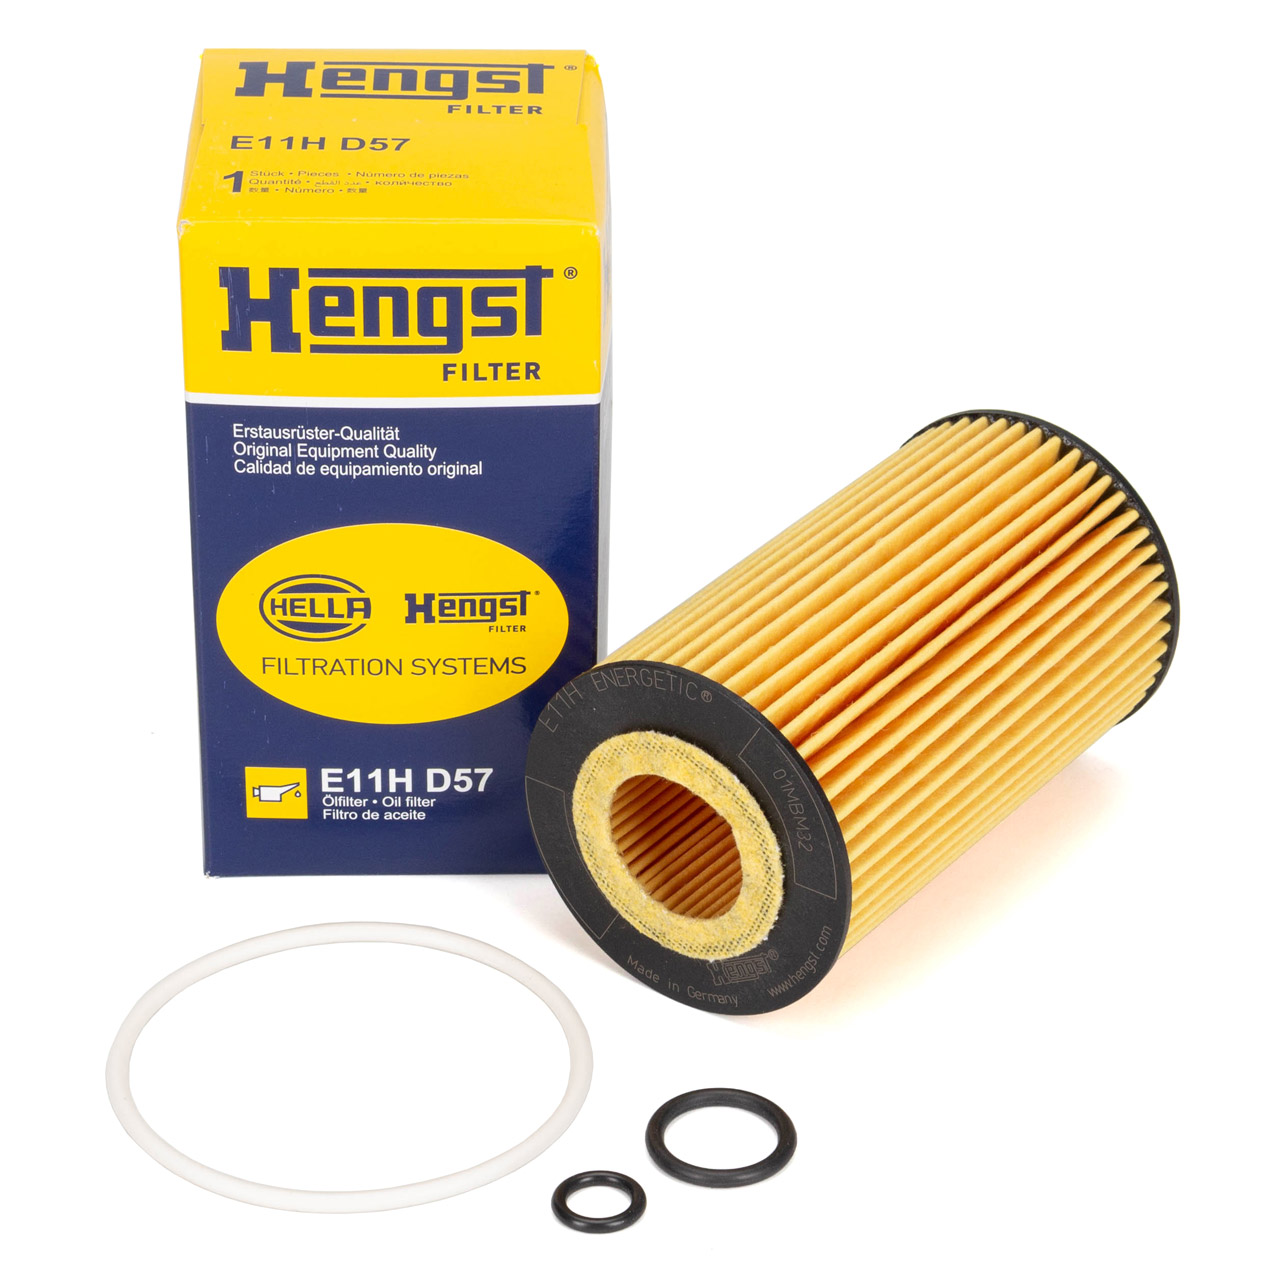 HENGST E11HD57 Ölfilter für MERCEDES W203 W204 C209 W210 W211 W461 W463 W163 CDI